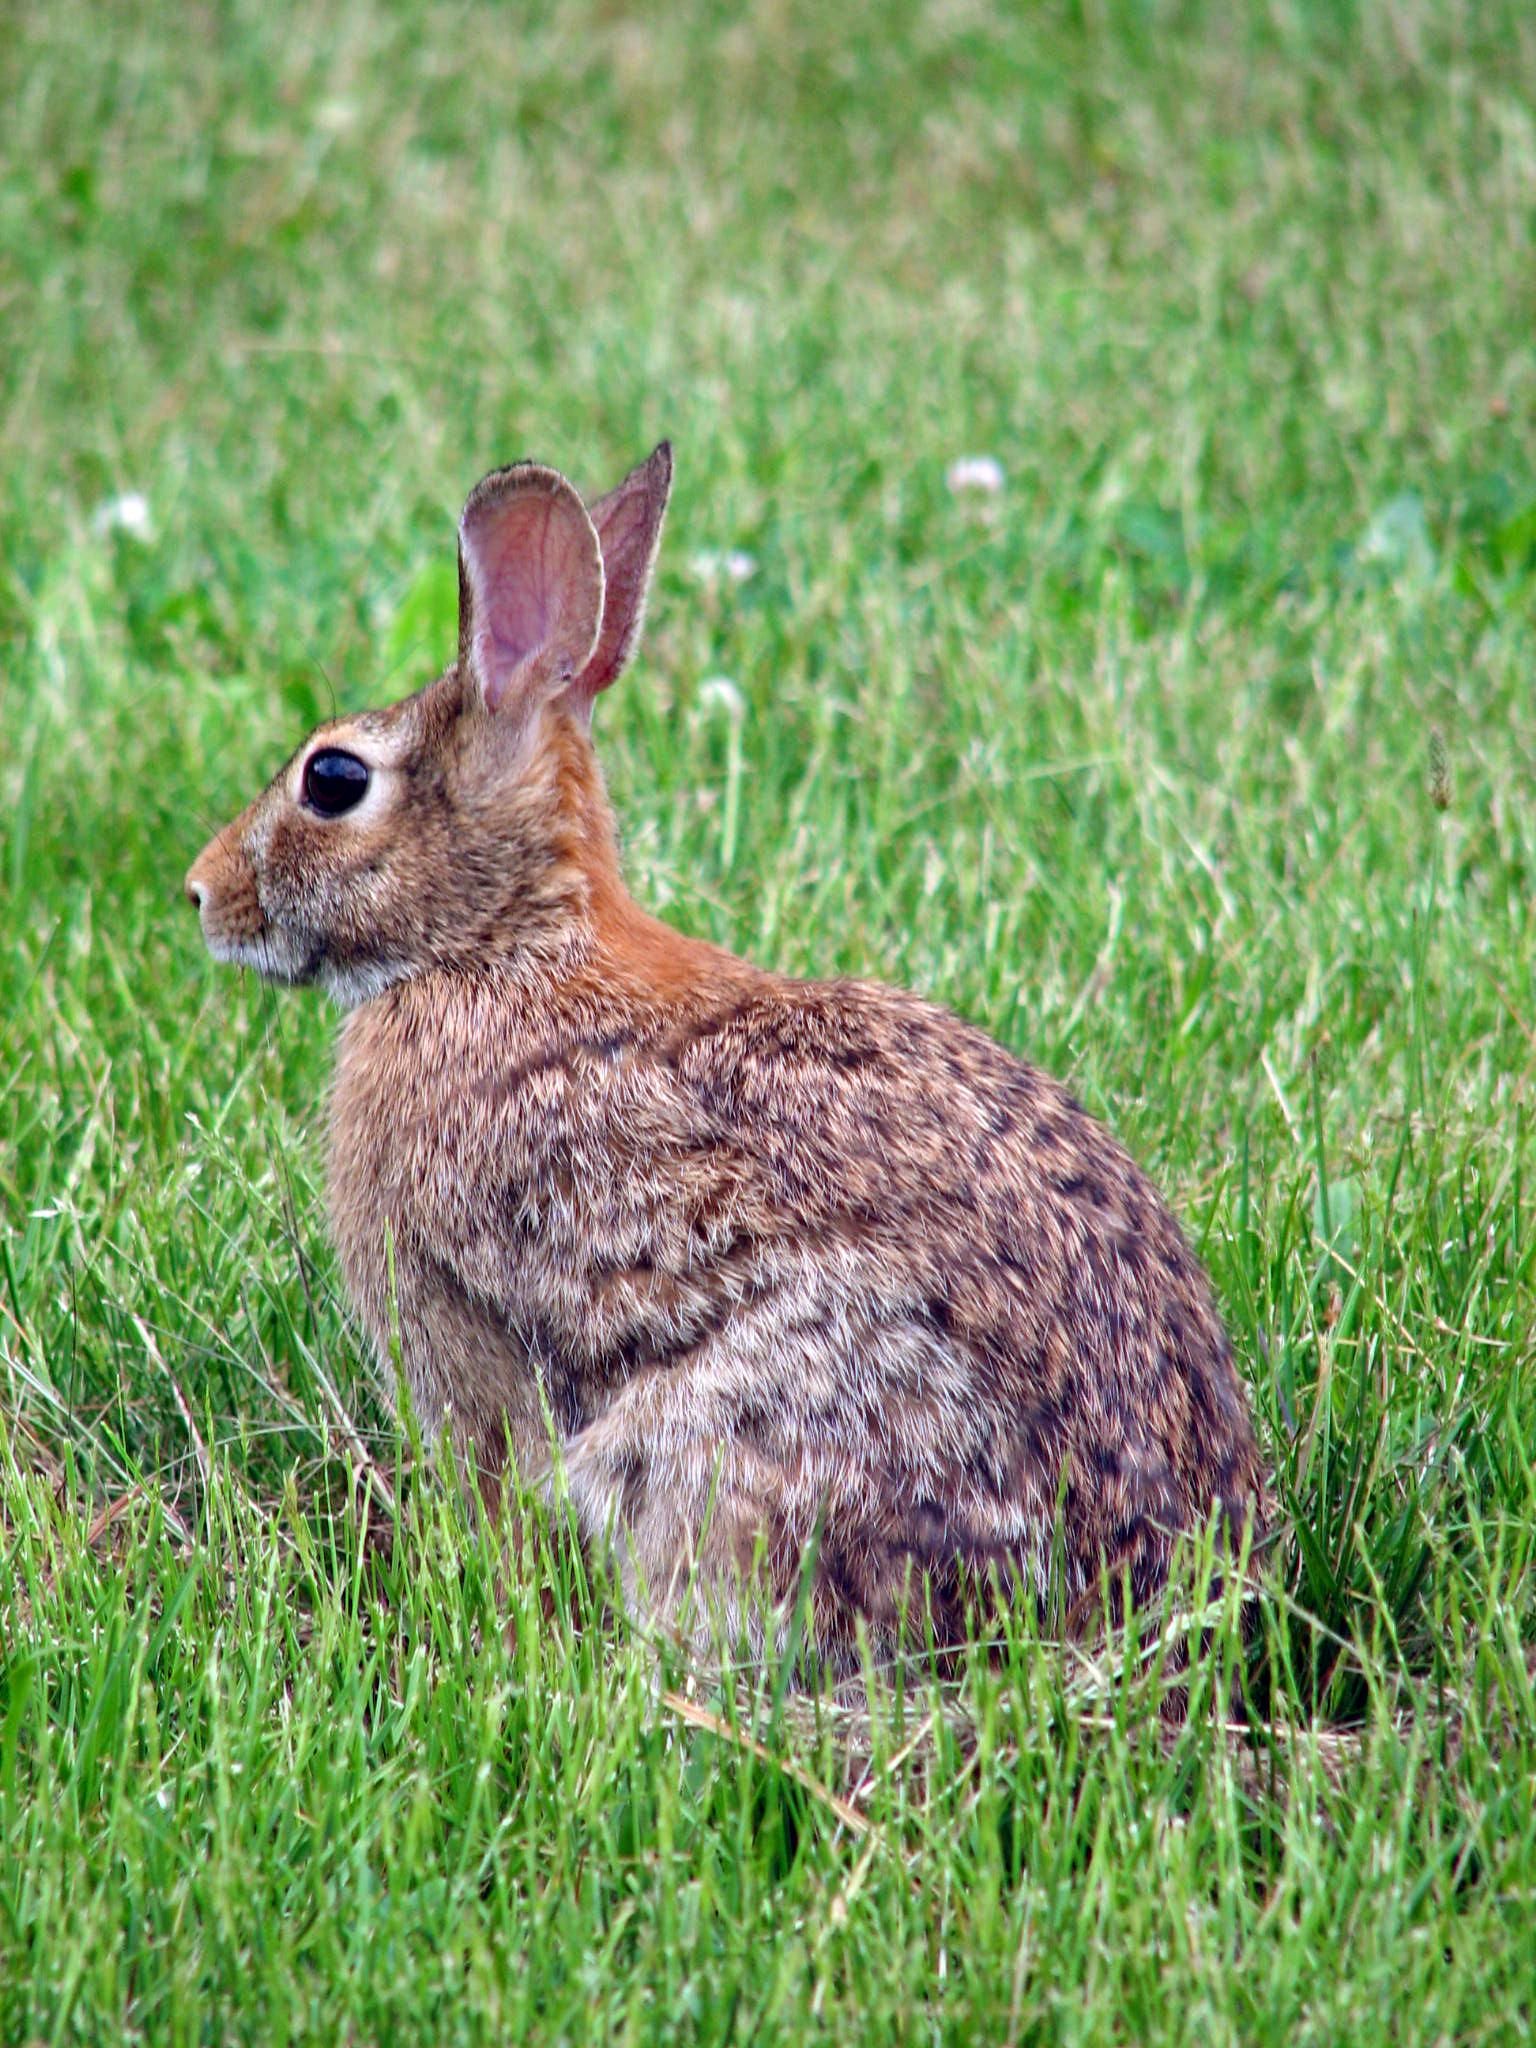 Thức ăn chủ yếu của loài thỏ này là thực vật có sẵn trong tự nhiên